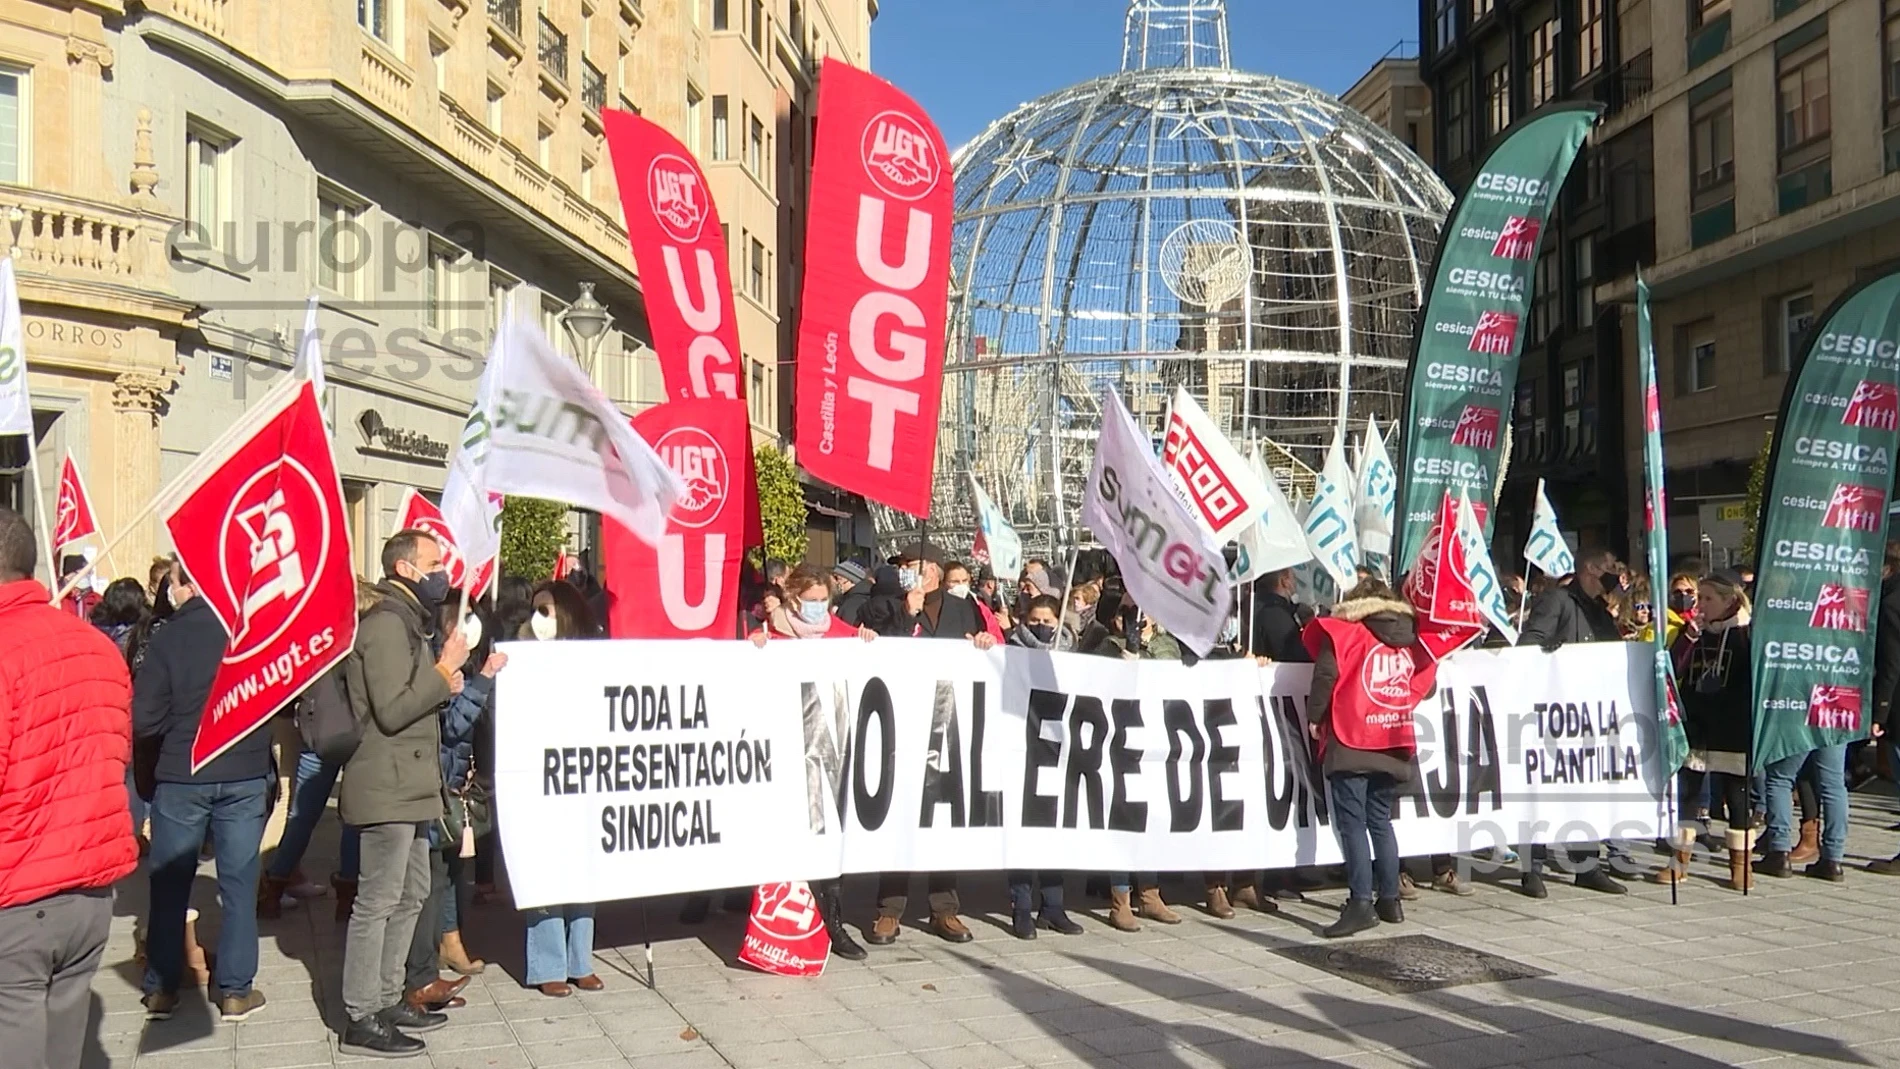 Los sindicatos cifran en un 91% el seguimiento de la jornada de huelga convocada en Unicaja Banco. EUROPA PRESS